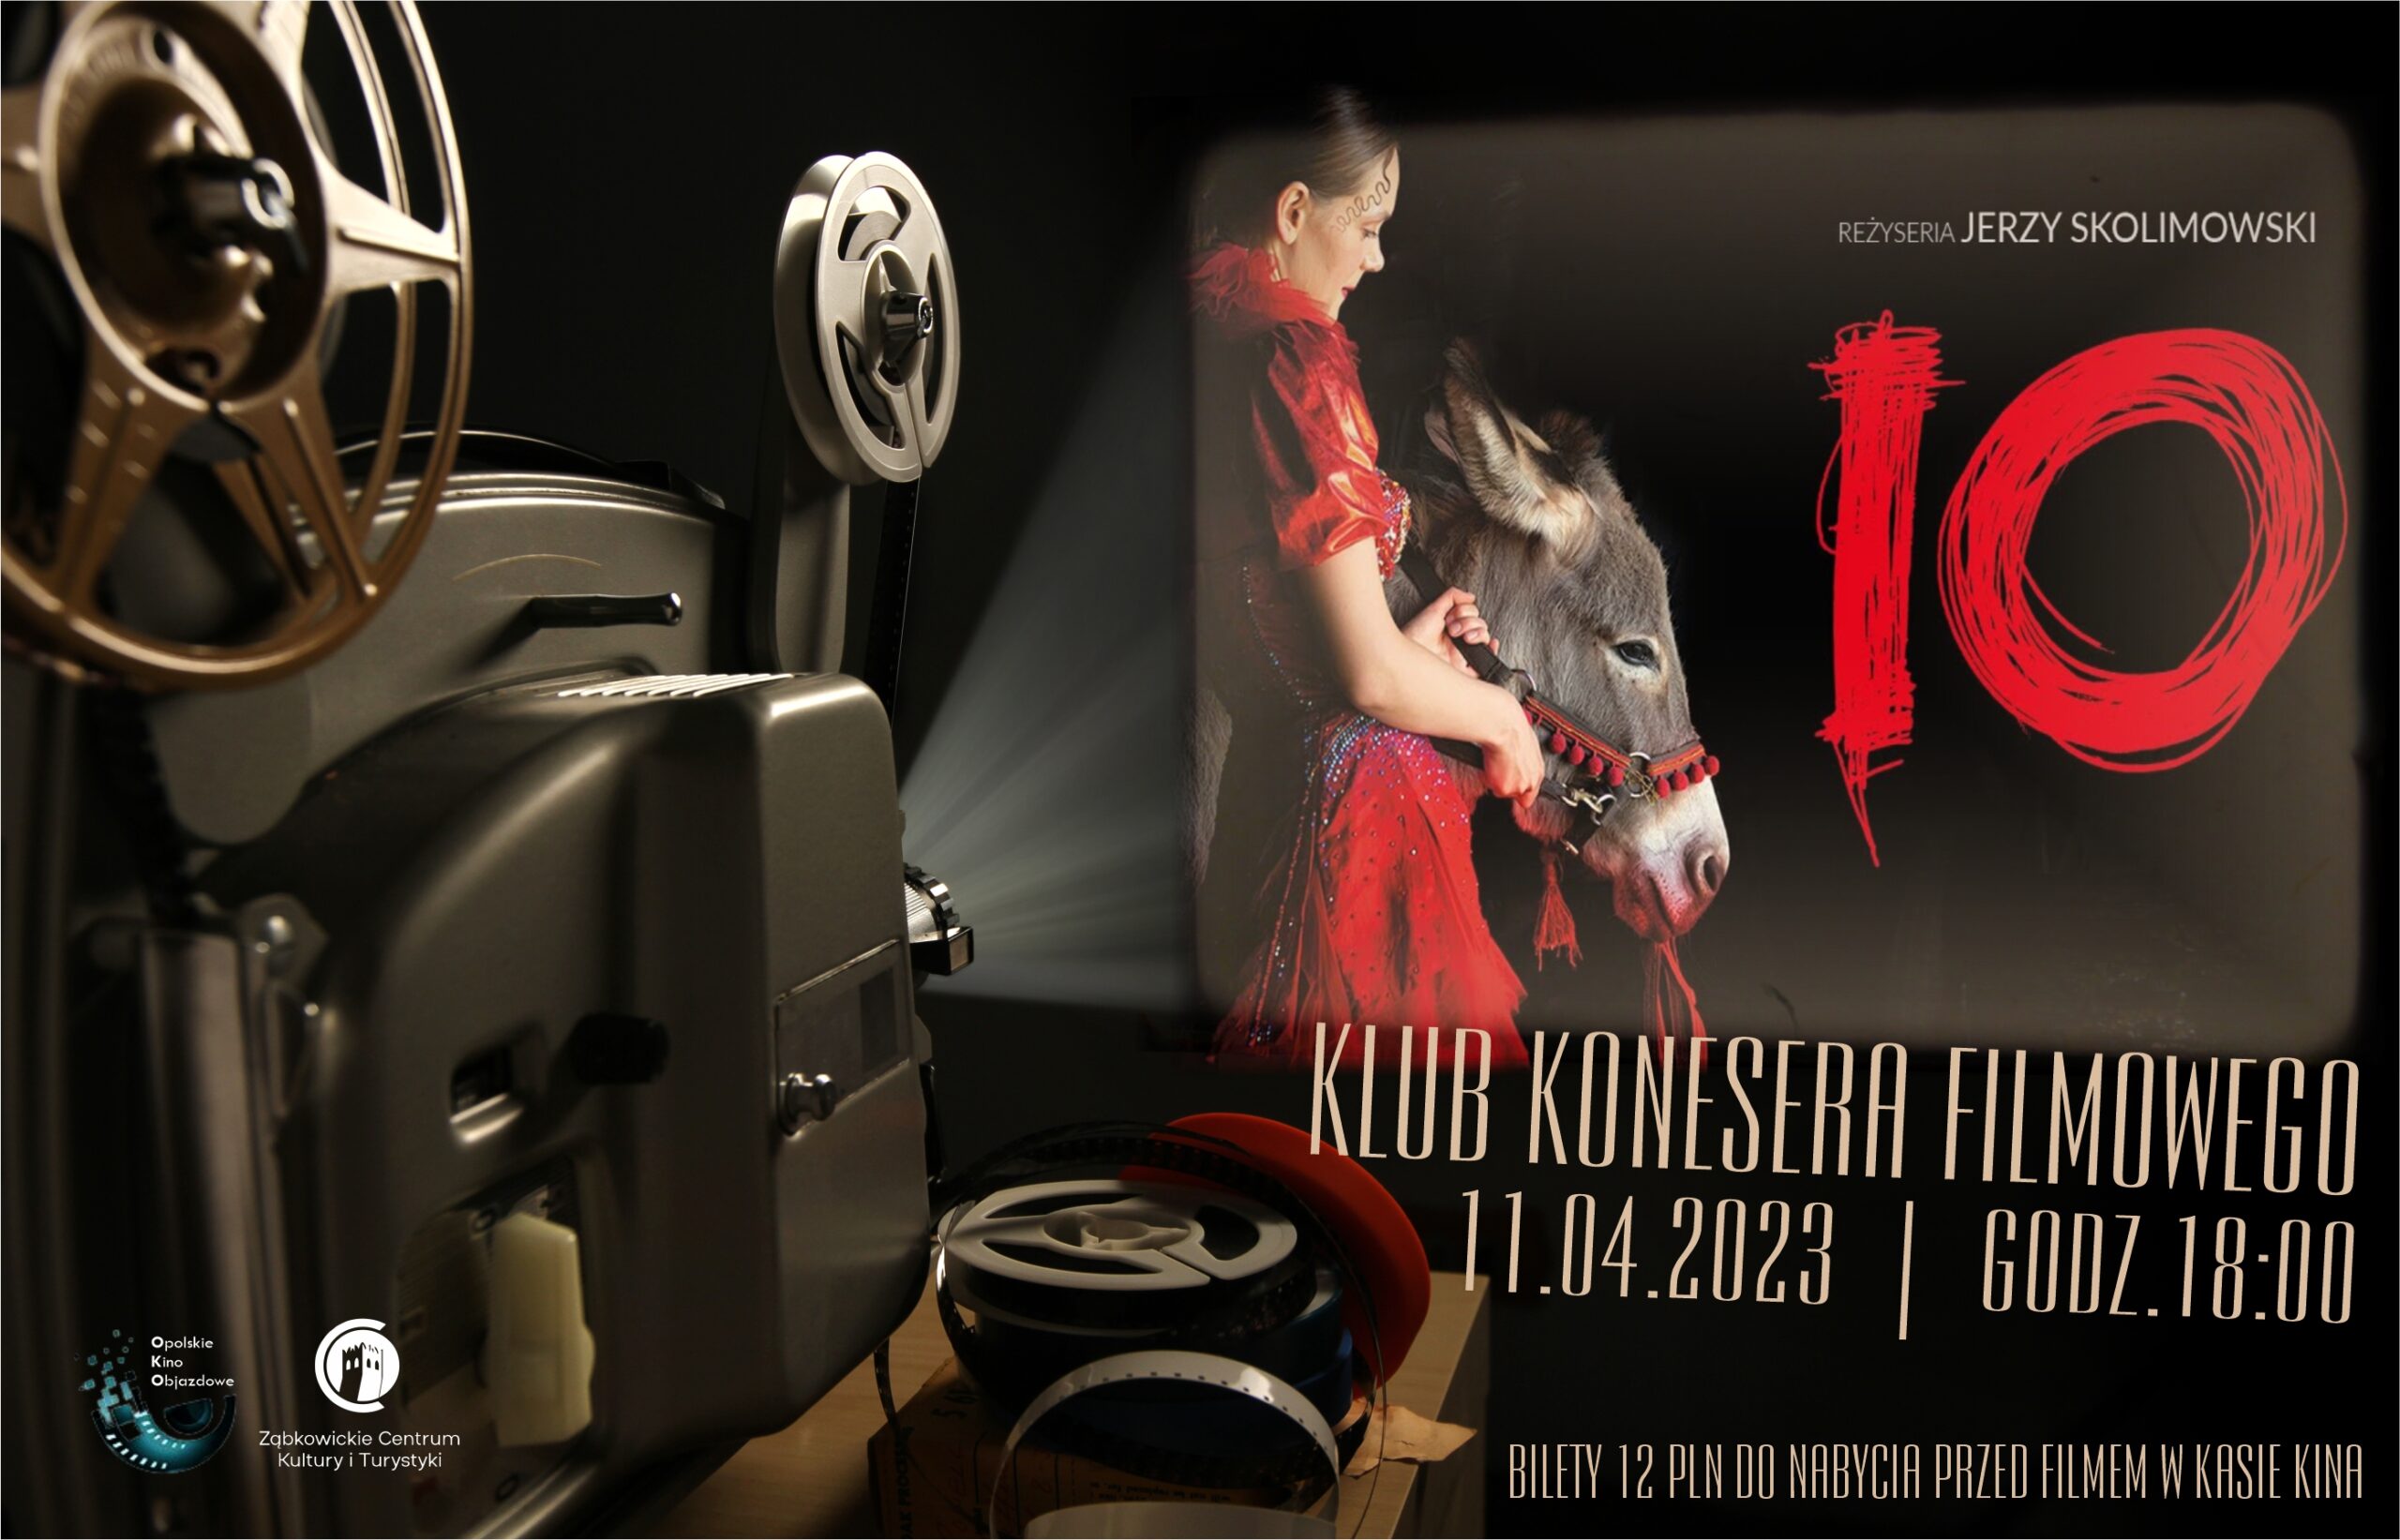 Plakat o seansie filmu "IO" 11.04.2023 o godz. 18:00 w kinie Ząbkowickiego Centrum Kultury i Turystyki.